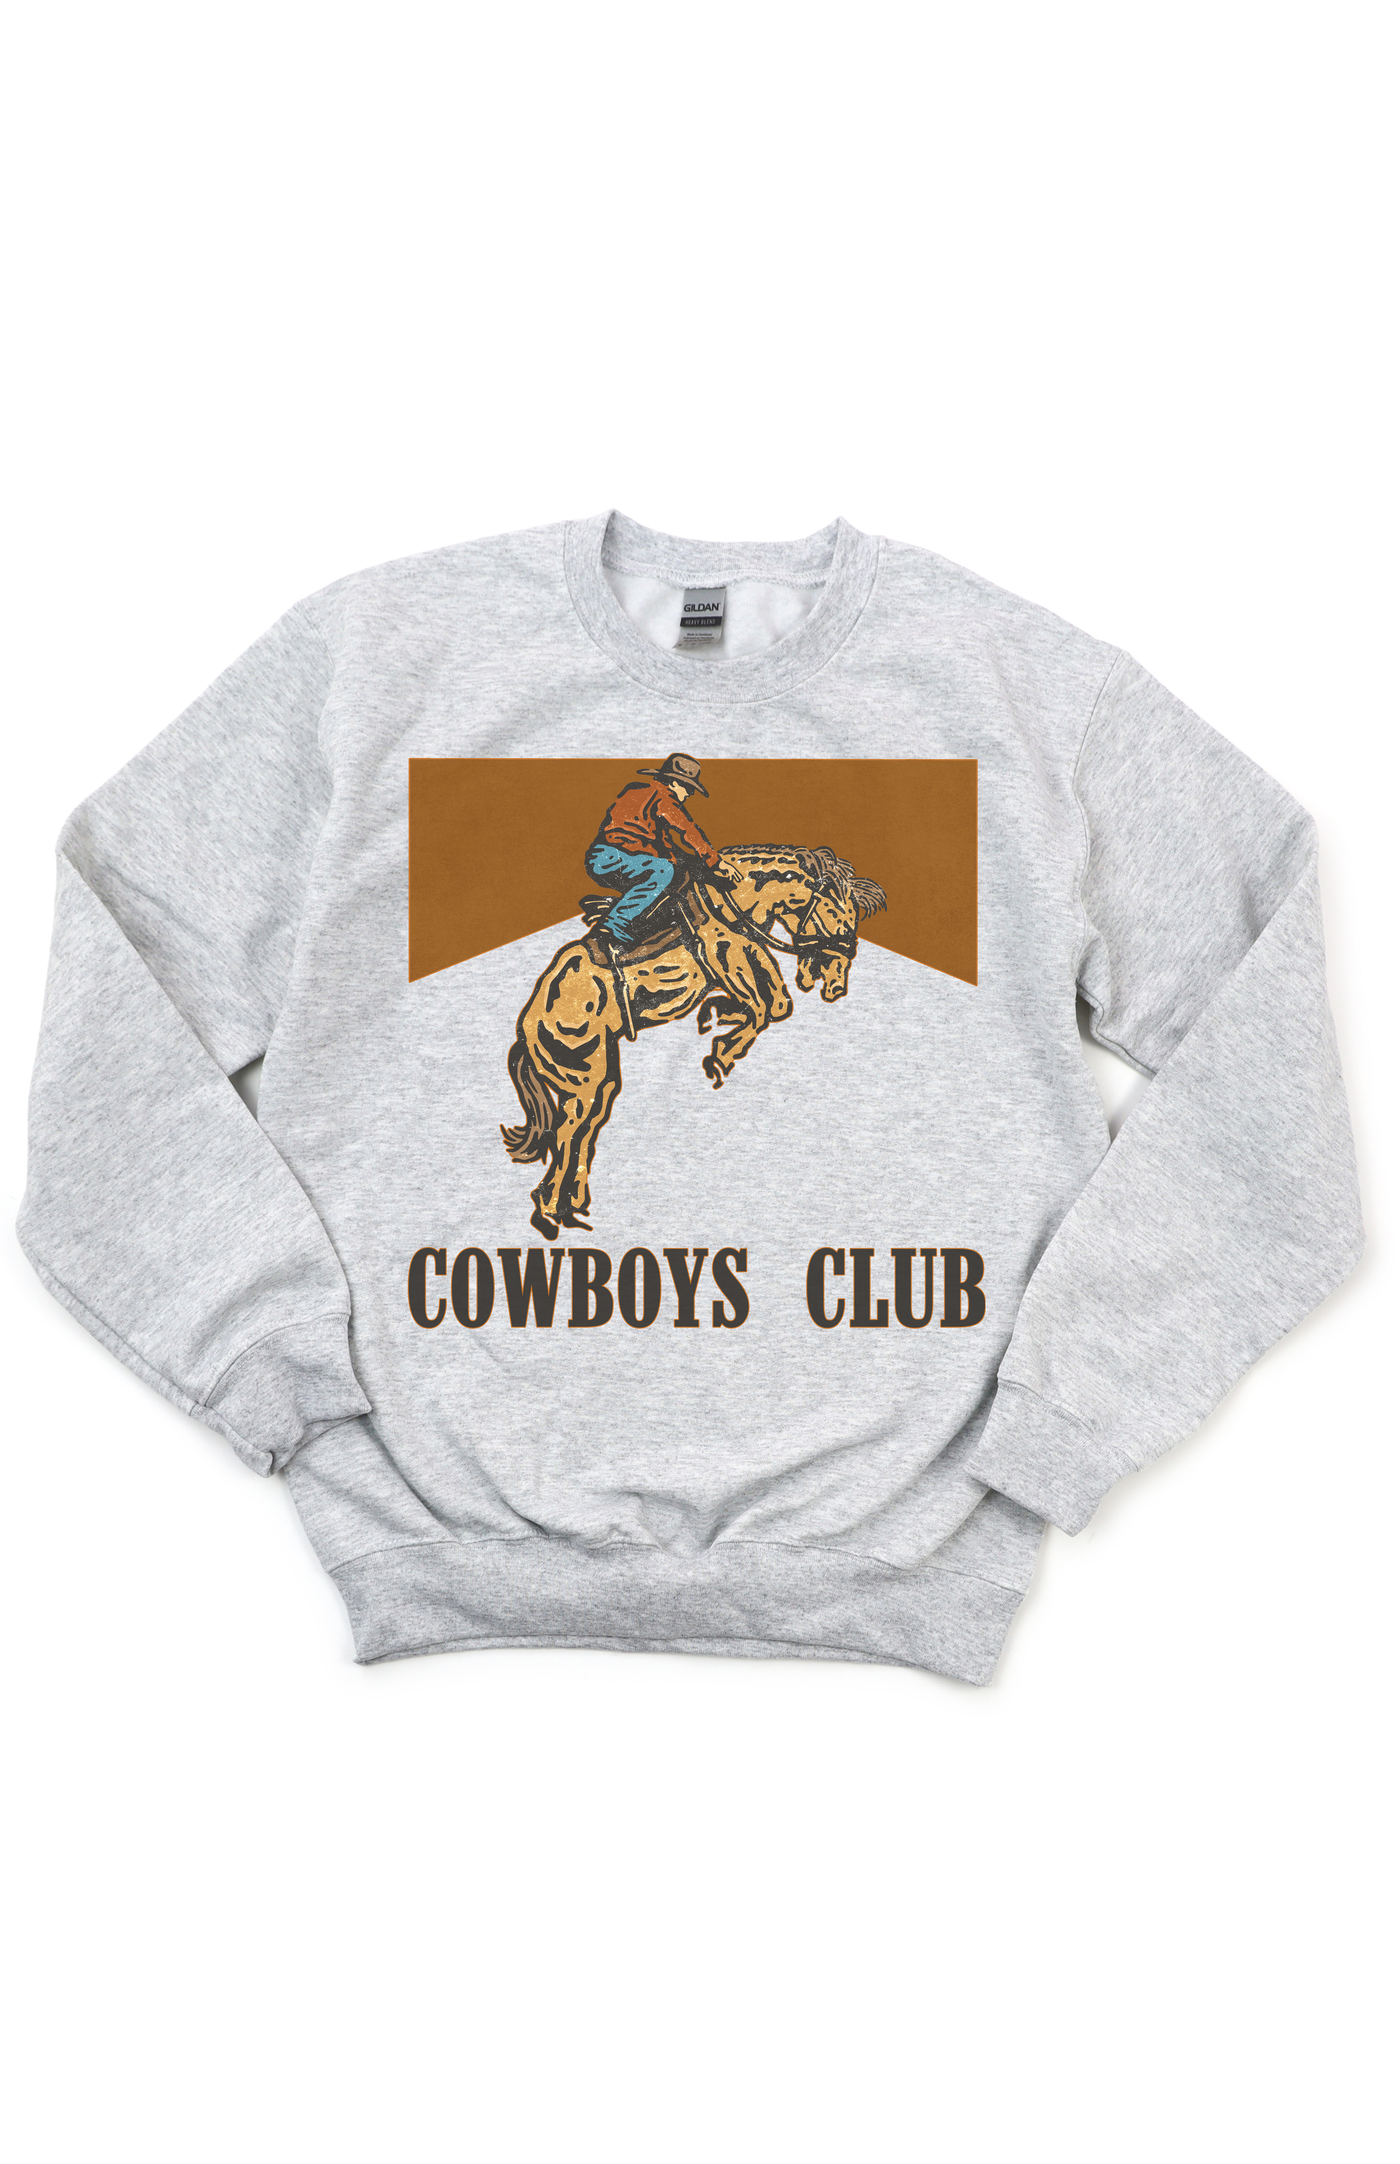 Cowboy Club Tee/Sweatshirt